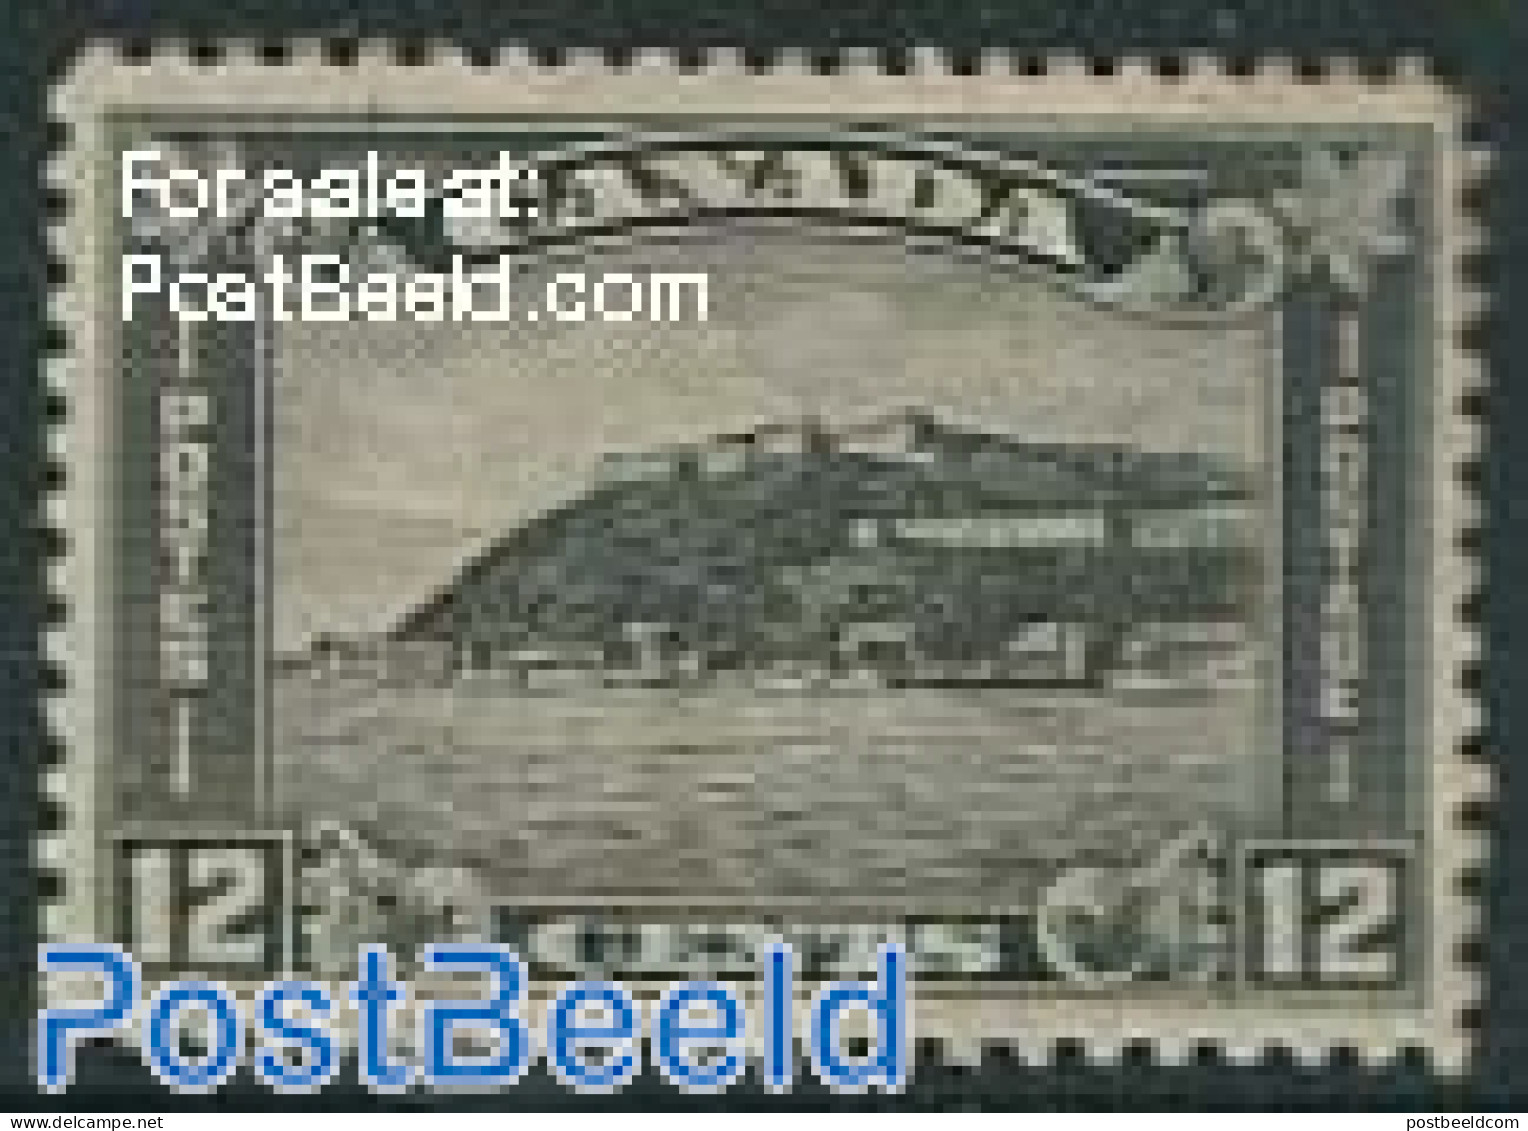 Canada 1930 12c, Stamp Out Of Set, Unused (hinged) - Ongebruikt